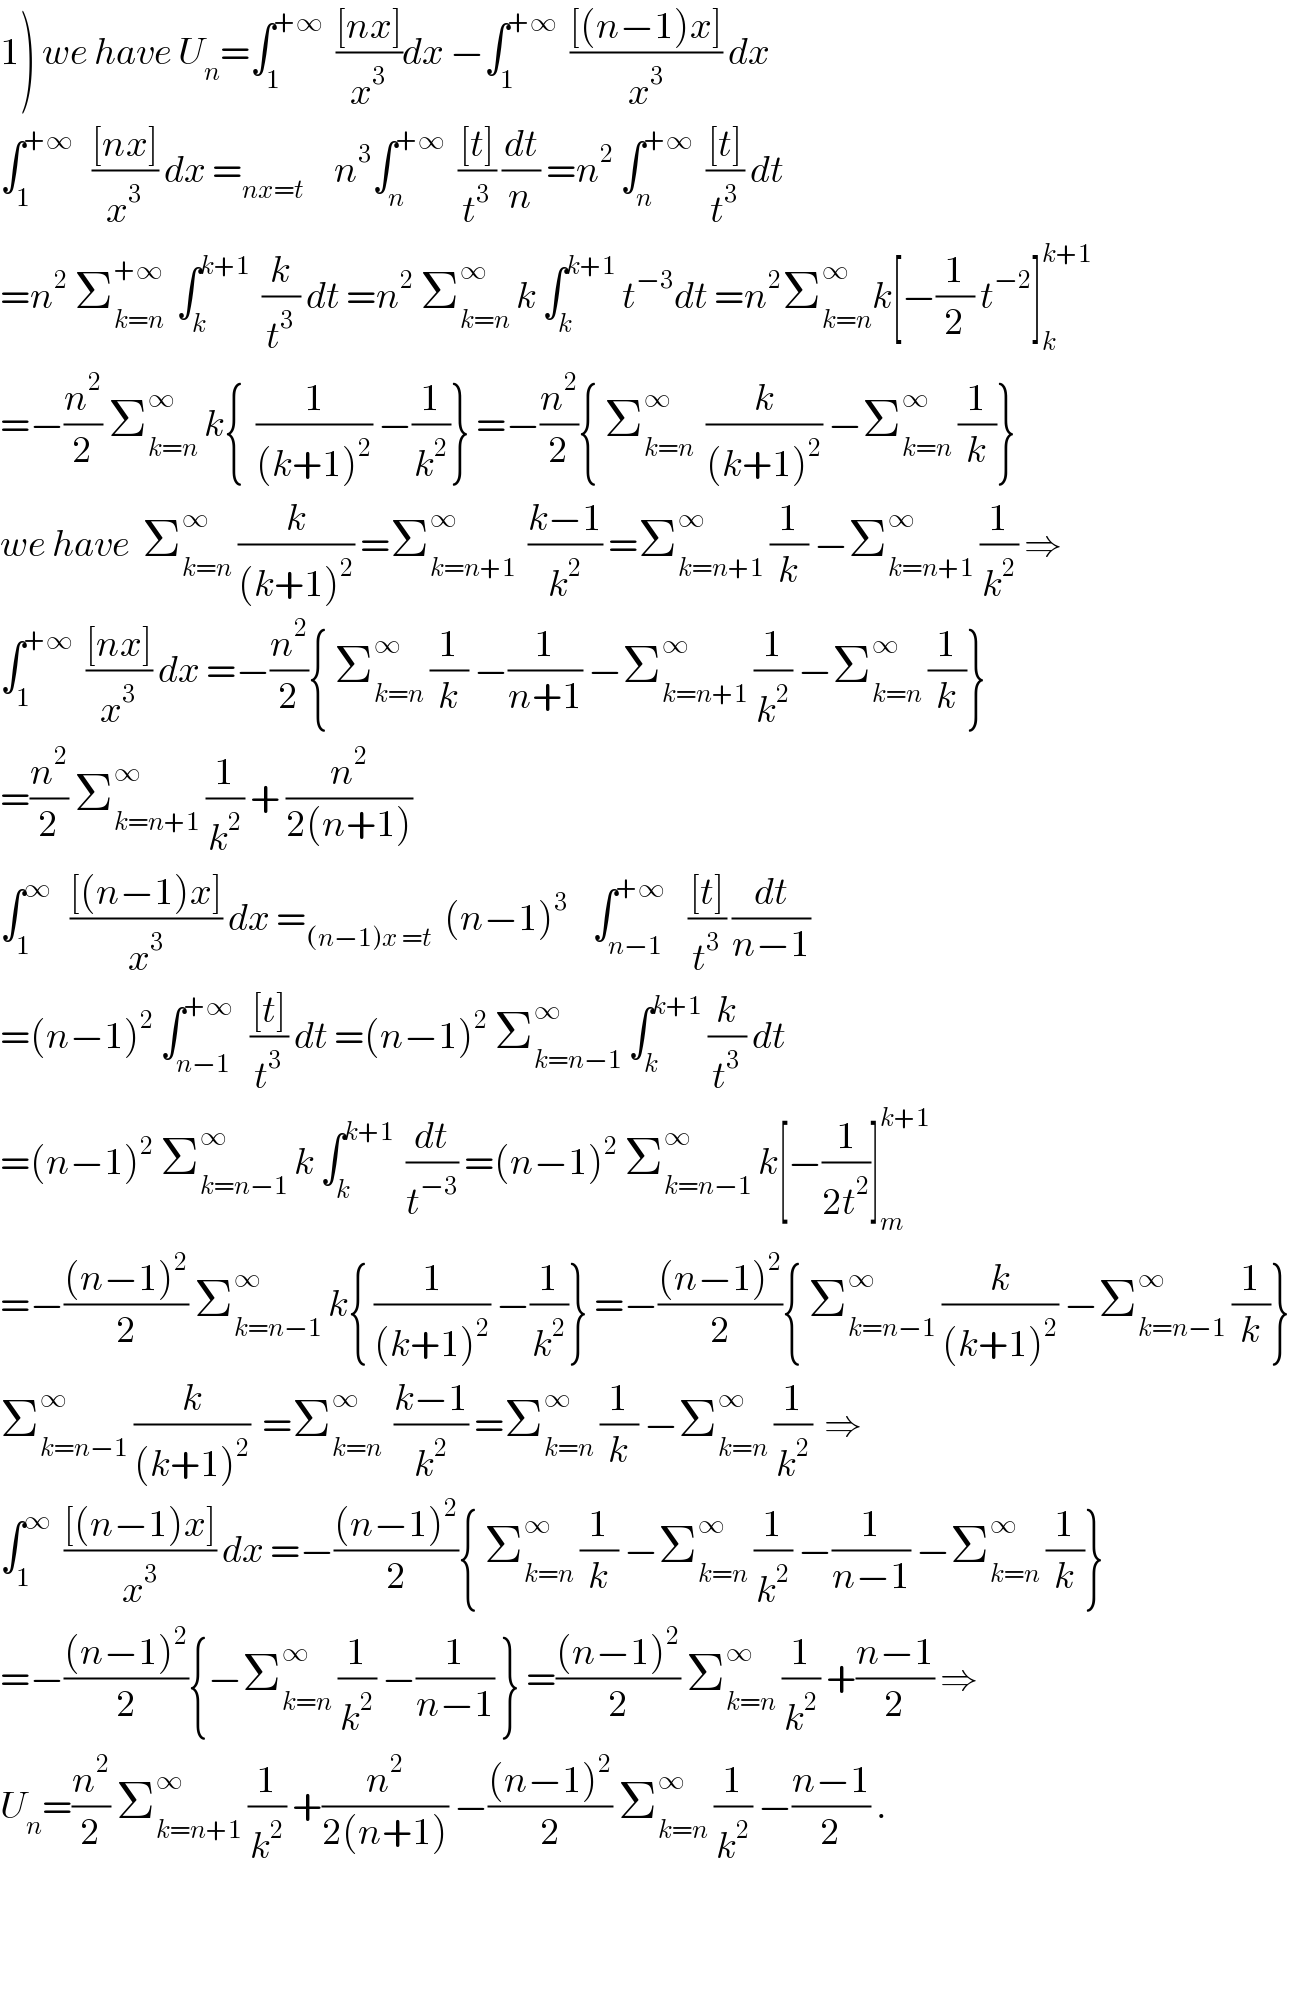 1) we have U_n =∫_1 ^(+∞)   (([nx])/x^3 )dx −∫_1 ^(+∞)   (([(n−1)x])/x^3 ) dx   ∫_1 ^(+∞)    (([nx])/x^3 ) dx =_(nx=t)      n^3 ∫_n ^(+∞)   (([t])/t^3 ) (dt/n) =n^2  ∫_n ^(+∞)   (([t])/t^3 ) dt  =n^2  Σ_(k=n) ^(+∞)   ∫_k ^(k+1)   (k/t^3 ) dt =n^2  Σ_(k=n) ^∞  k ∫_k ^(k+1)  t^(−3) dt =n^2 Σ_(k=n) ^∞ k[−(1/2) t^(−2) ]_k ^(k+1)   =−(n^2 /2) Σ_(k=n) ^∞  k{  (1/((k+1)^2 )) −(1/k^2 )} =−(n^2 /2){ Σ_(k=n) ^∞   (k/((k+1)^2 )) −Σ_(k=n) ^∞  (1/k)}  we have  Σ_(k=n) ^∞  (k/((k+1)^2 )) =Σ_(k=n+1) ^∞   ((k−1)/k^2 ) =Σ_(k=n+1) ^∞  (1/k) −Σ_(k=n+1) ^∞  (1/k^2 ) ⇒  ∫_1 ^(+∞)   (([nx])/x^3 ) dx =−(n^2 /2){ Σ_(k=n) ^∞  (1/k) −(1/(n+1)) −Σ_(k=n+1) ^∞  (1/k^2 ) −Σ_(k=n) ^∞  (1/k)}  =(n^2 /2) Σ_(k=n+1) ^∞  (1/k^2 ) + (n^2 /(2(n+1)))  ∫_1 ^∞    (([(n−1)x])/x^3 ) dx =_((n−1)x =t)   (n−1)^3     ∫_(n−1) ^(+∞)    (([t])/t^3 ) (dt/(n−1))  =(n−1)^2  ∫_(n−1) ^(+∞)   (([t])/t^3 ) dt =(n−1)^2  Σ_(k=n−1) ^∞  ∫_k ^(k+1)  (k/t^3 ) dt  =(n−1)^2  Σ_(k=n−1) ^∞  k ∫_k ^(k+1)   (dt/t^(−3) ) =(n−1)^2  Σ_(k=n−1) ^∞  k[−(1/(2t^2 ))]_m ^(k+1)   =−(((n−1)^2 )/2) Σ_(k=n−1) ^∞  k{ (1/((k+1)^2 )) −(1/k^2 )} =−(((n−1)^2 )/2){ Σ_(k=n−1) ^∞  (k/((k+1)^2 )) −Σ_(k=n−1) ^∞  (1/k)}  Σ_(k=n−1) ^∞  (k/((k+1)^2 ))  =Σ_(k=n) ^∞   ((k−1)/k^2 ) =Σ_(k=n) ^∞  (1/k) −Σ_(k=n) ^∞  (1/k^2 )  ⇒  ∫_1 ^∞   (([(n−1)x])/x^3 ) dx =−(((n−1)^2 )/2){ Σ_(k=n) ^∞  (1/k) −Σ_(k=n) ^∞  (1/k^2 ) −(1/(n−1)) −Σ_(k=n) ^∞  (1/k)}  =−(((n−1)^2 )/2){−Σ_(k=n) ^∞  (1/k^2 ) −(1/(n−1)) } =(((n−1)^2 )/2) Σ_(k=n) ^∞  (1/k^2 ) +((n−1)/2) ⇒  U_n =(n^2 /2) Σ_(k=n+1) ^∞  (1/k^2 ) +(n^2 /(2(n+1))) −(((n−1)^2 )/2) Σ_(k=n) ^∞  (1/k^2 ) −((n−1)/2) .      